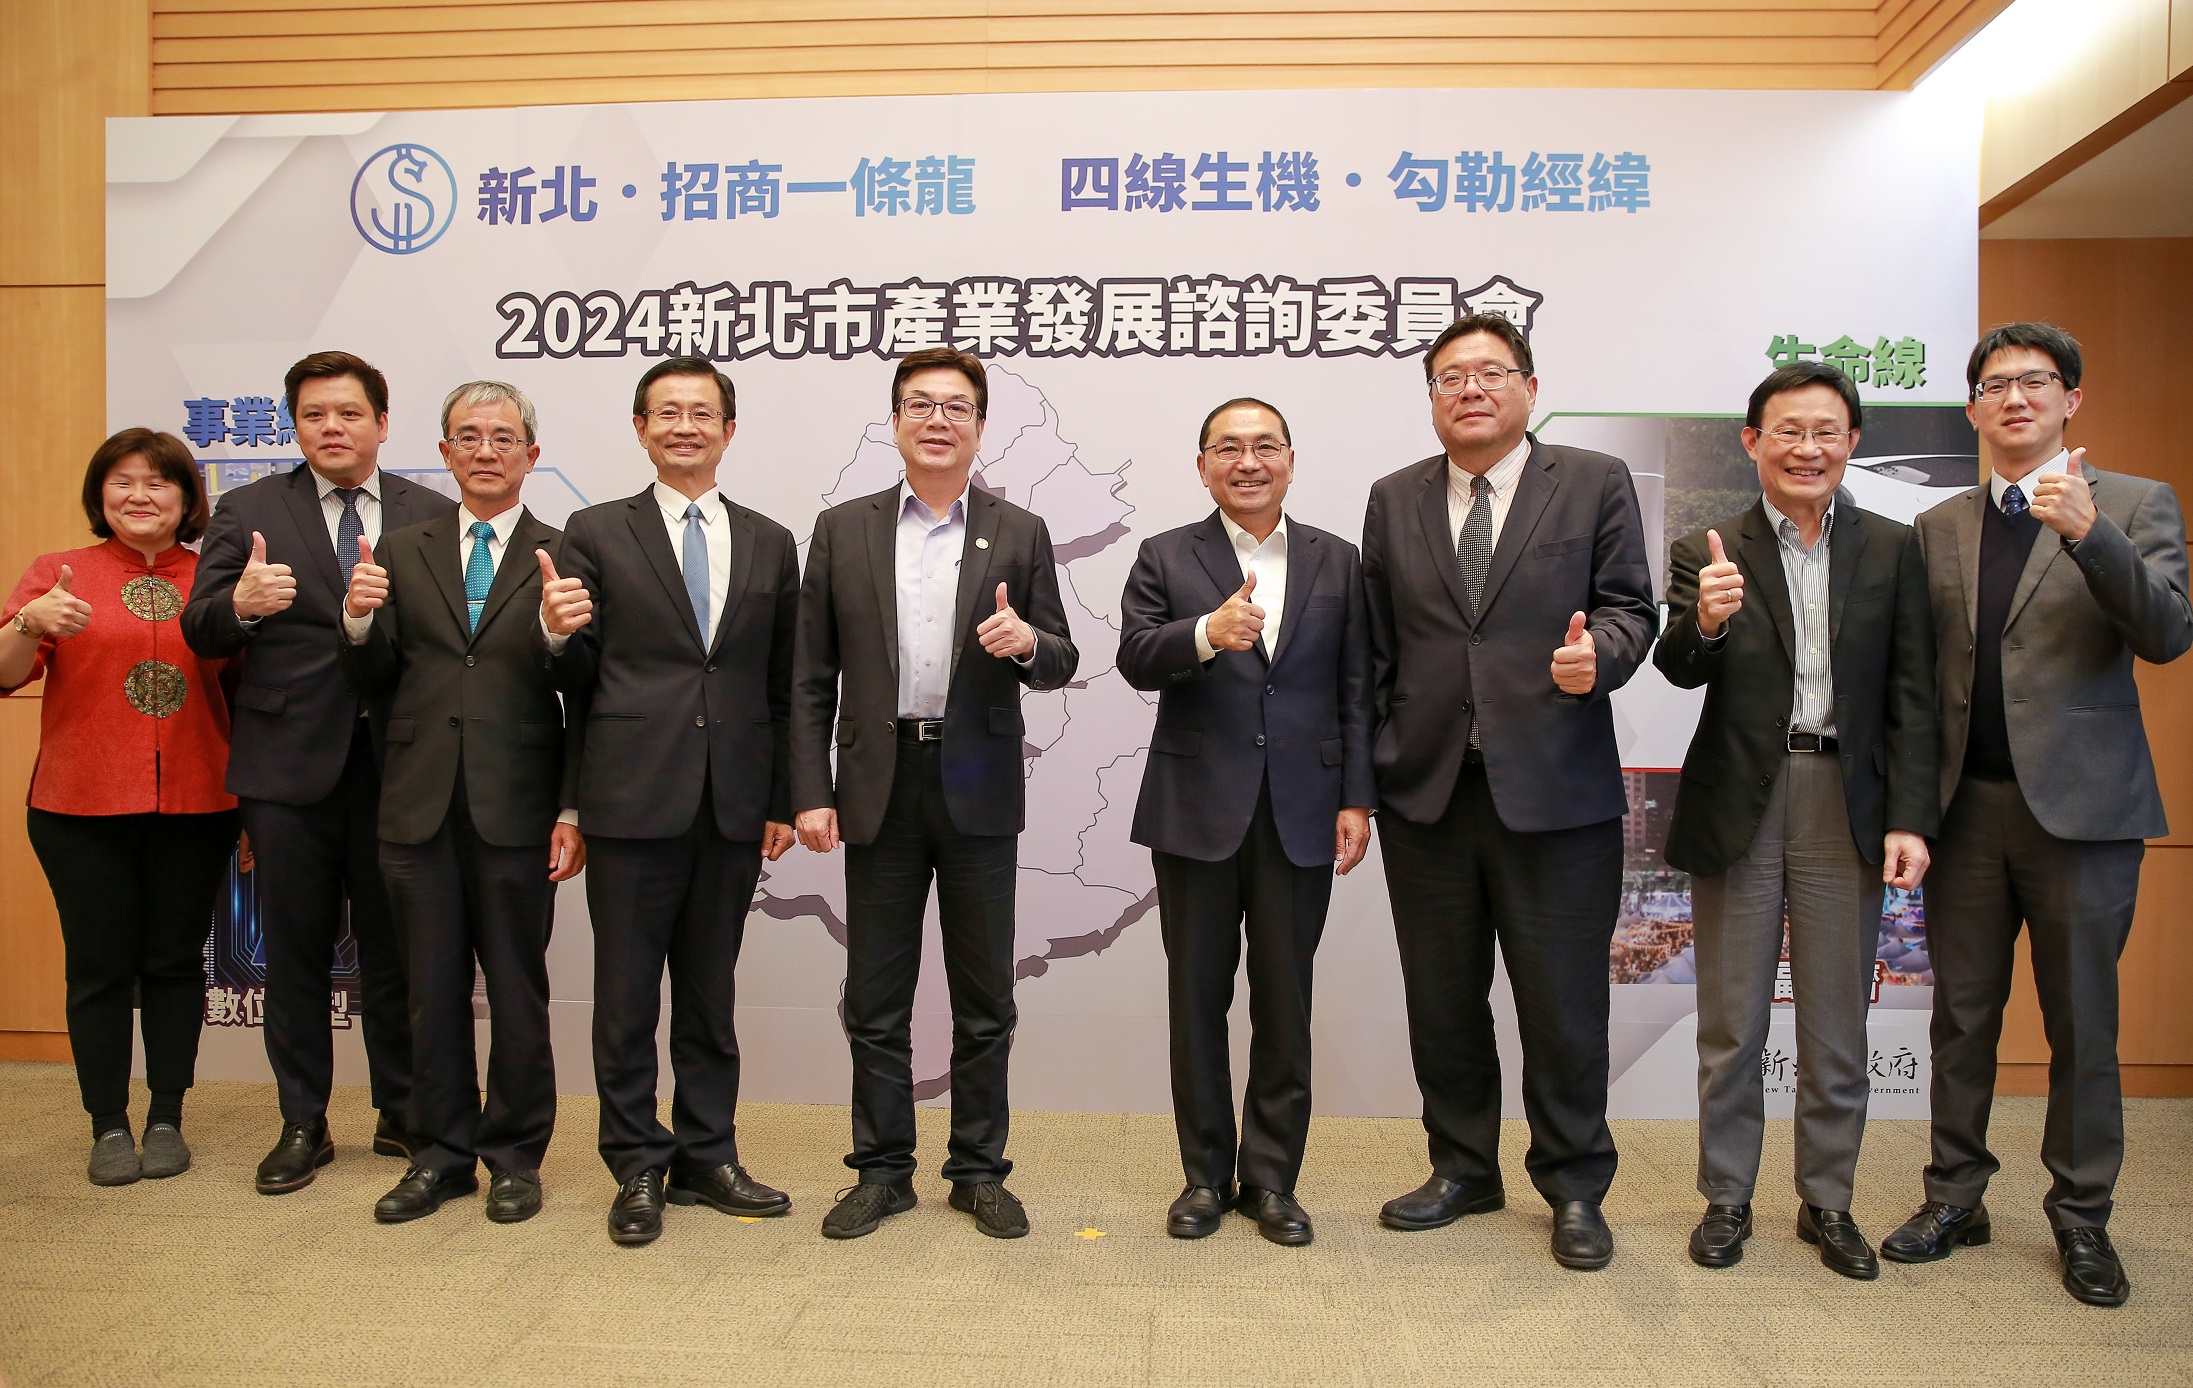 新北市長侯友宜及副市長劉和然與所有工商領袖代表合影留念。